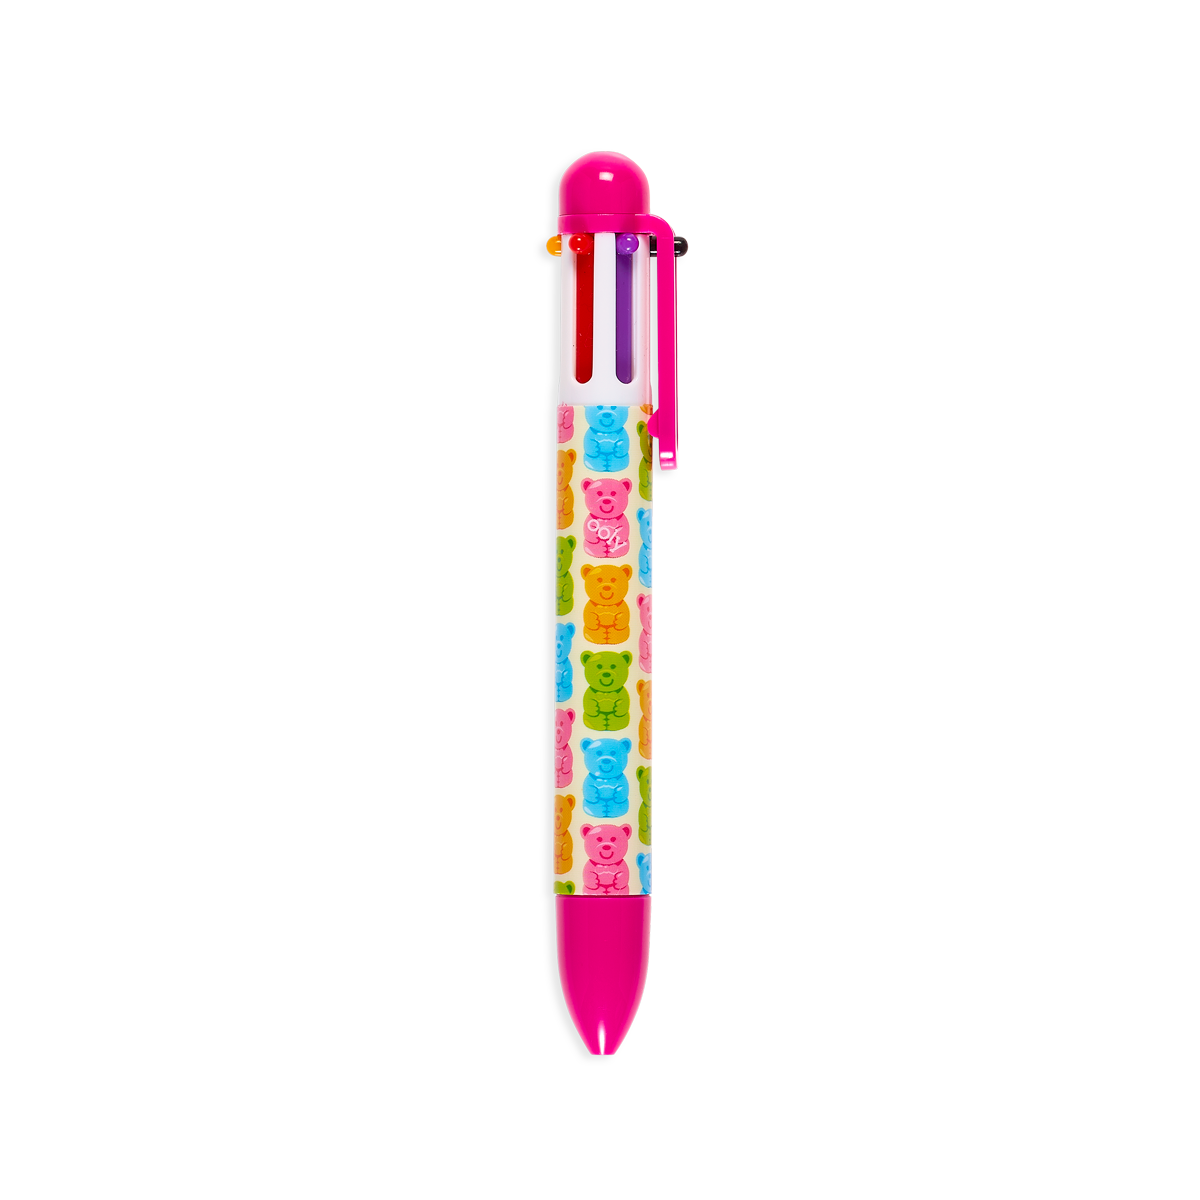 OOLY Sugar Joy 6 Click Multicolor Pen in hot pink